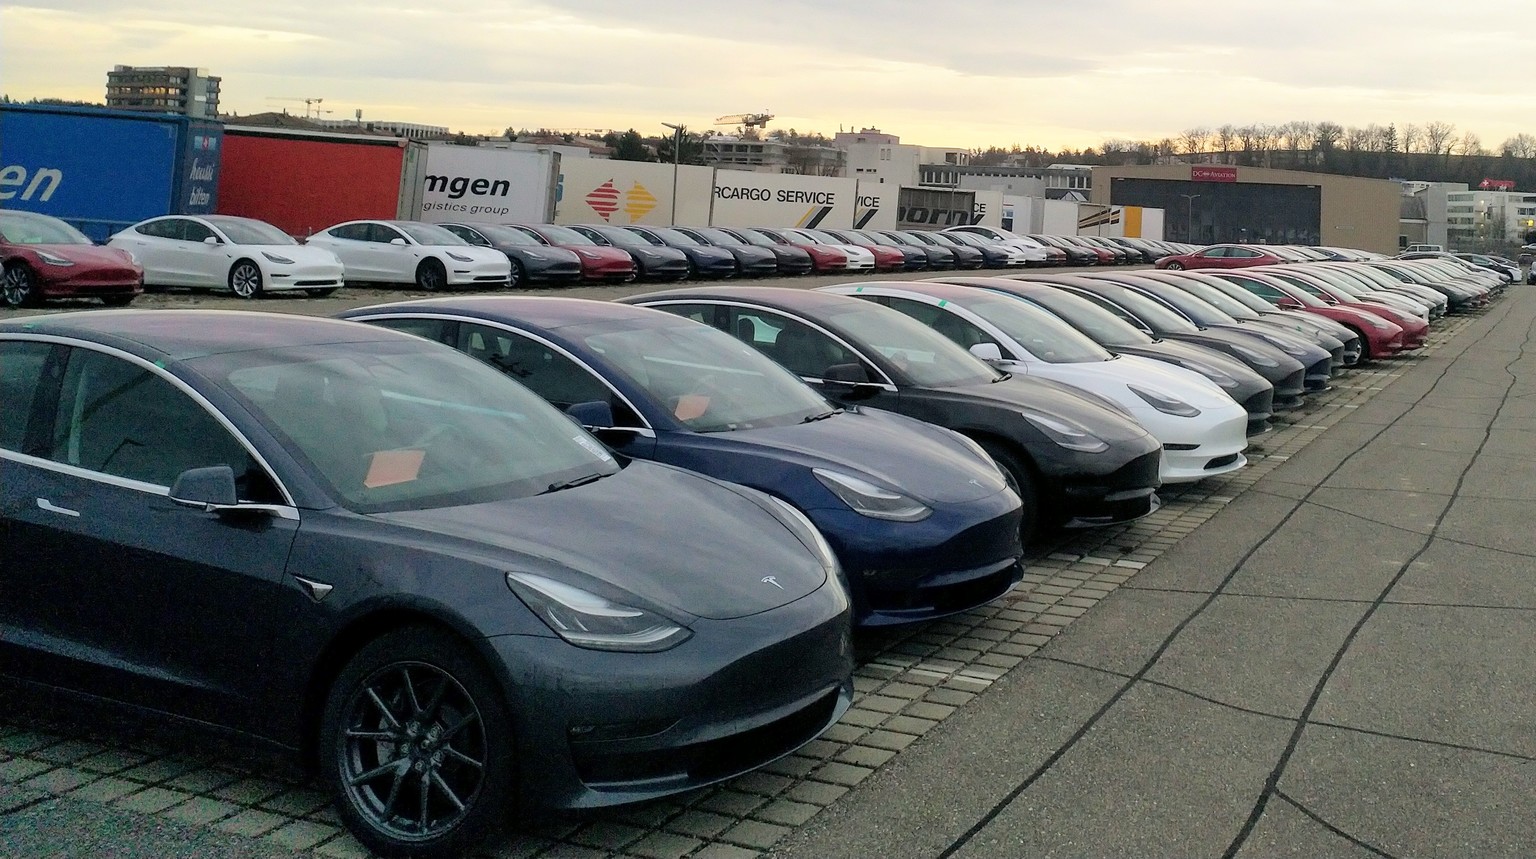 tel: 
Tesla 3 sind in der Schweiz (Kloten Flughafen) eingetroffen 😍😍😍😍😍😍